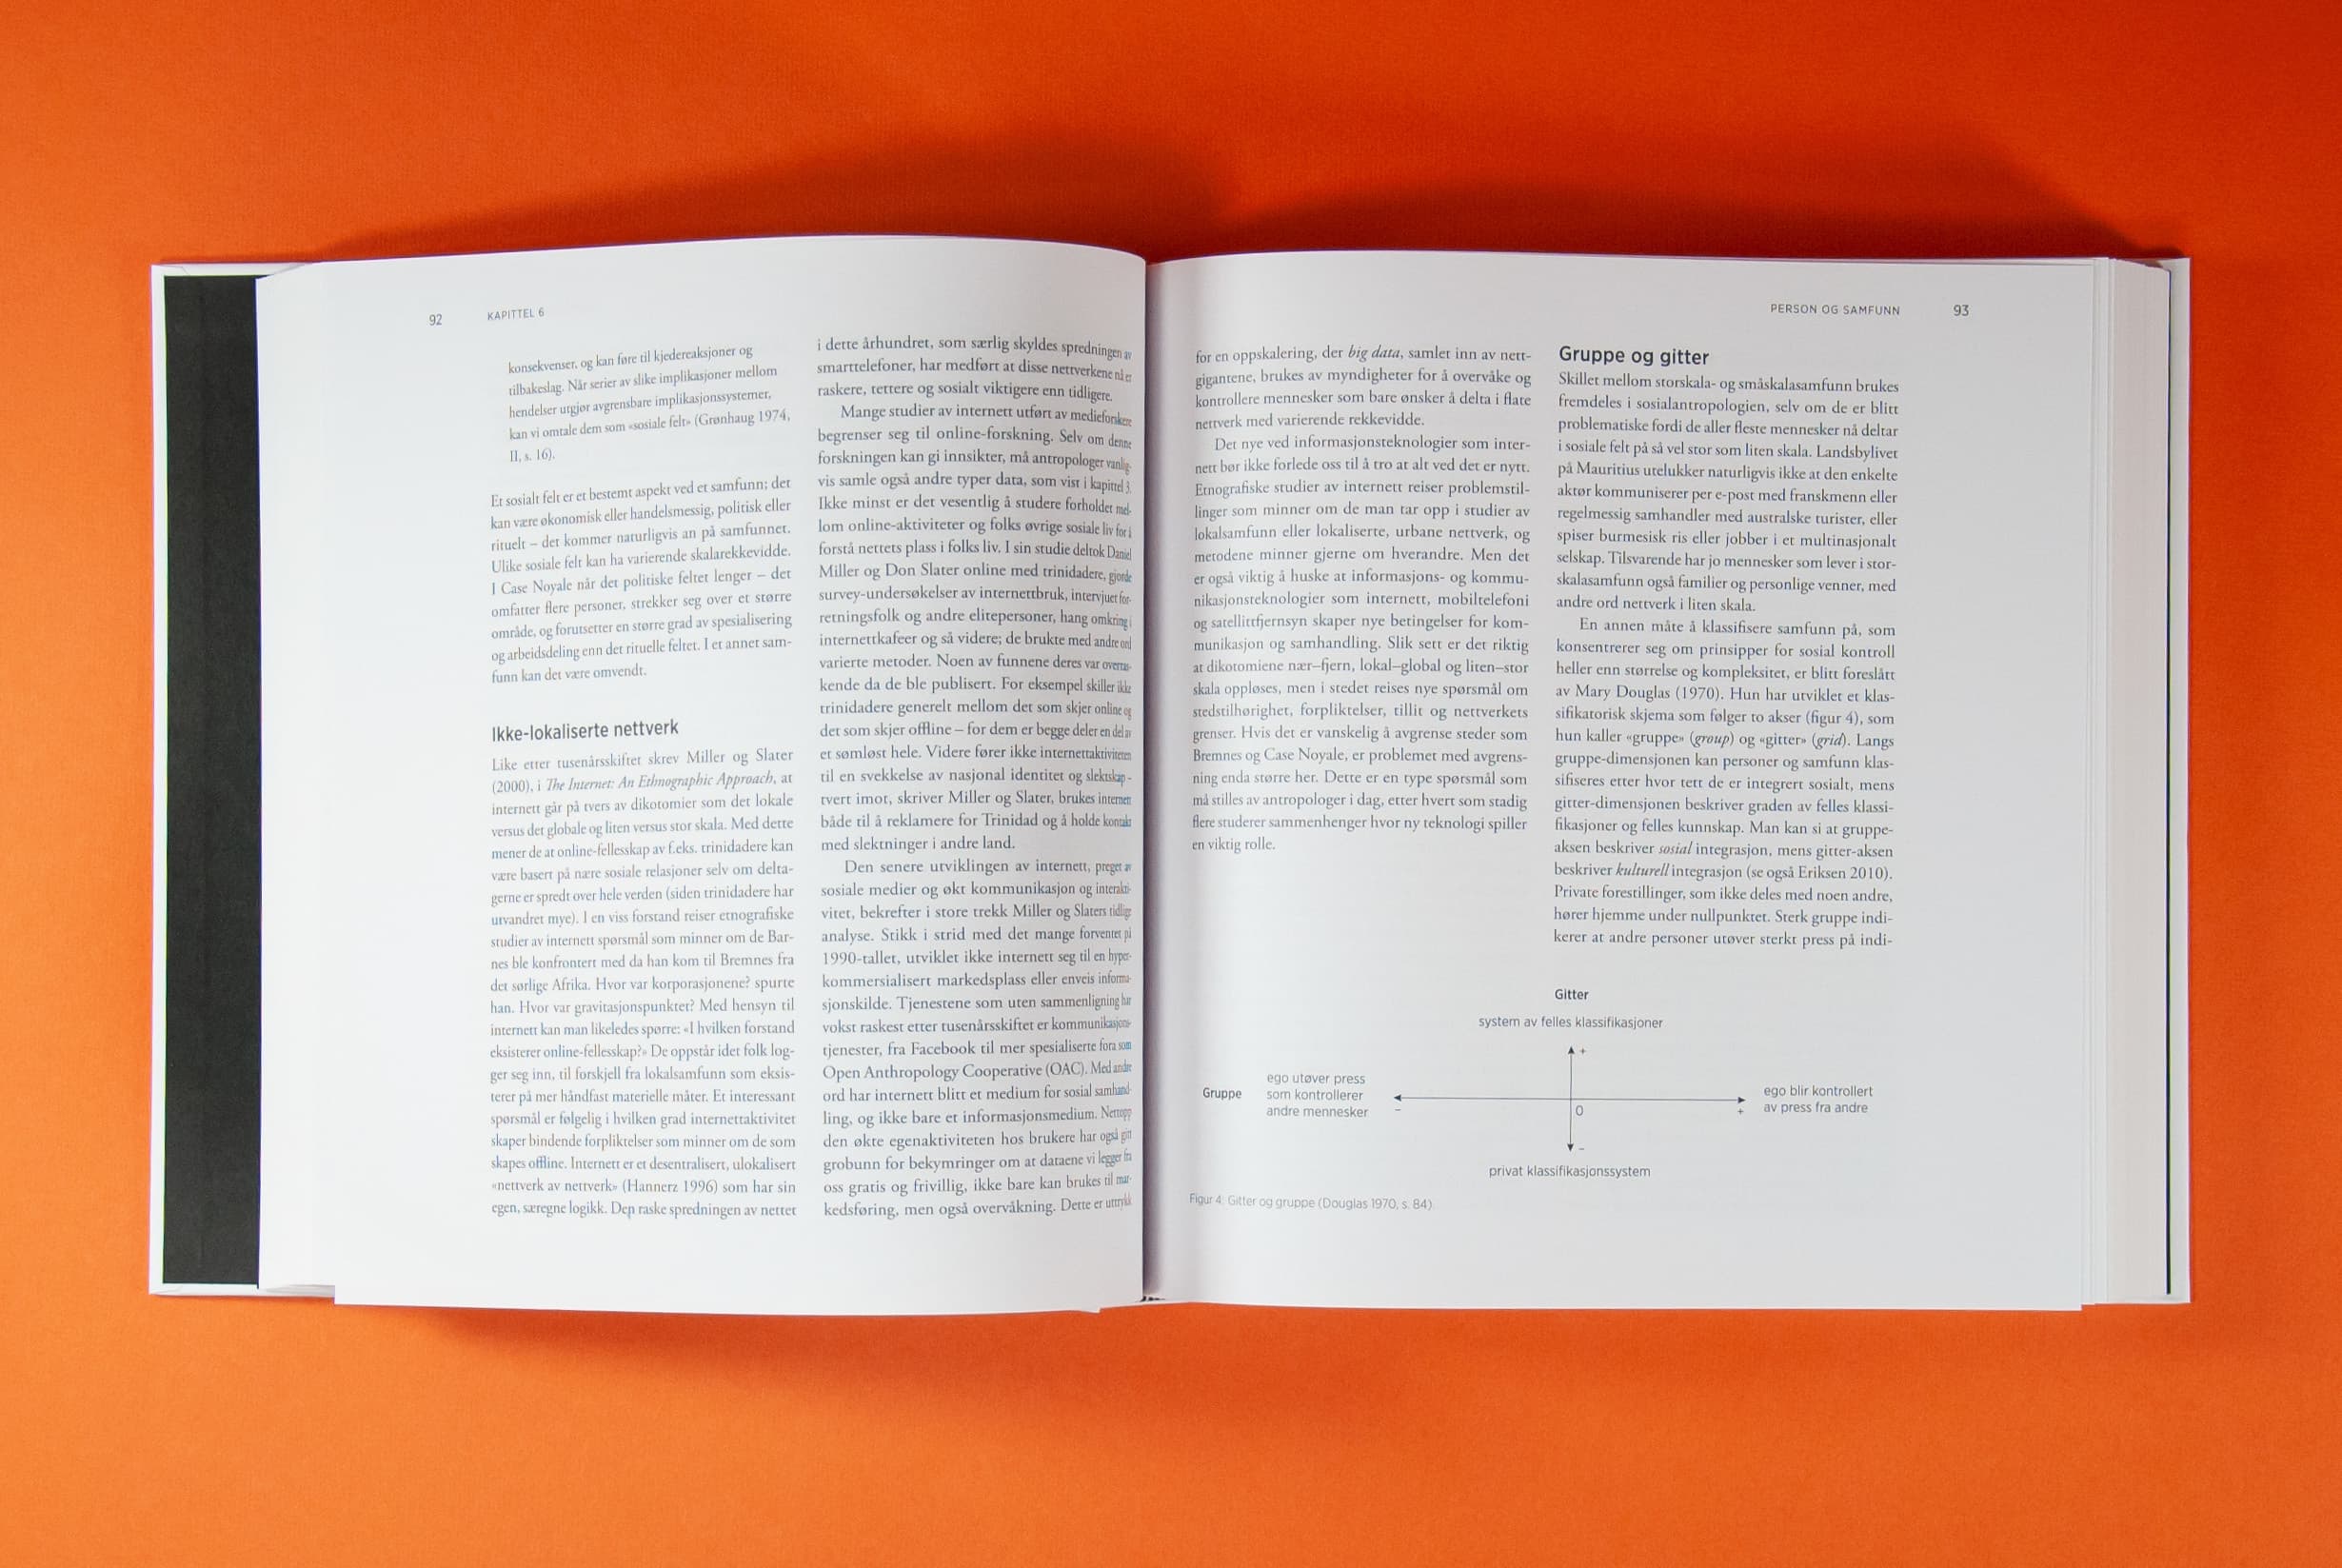 Bildet viser et oppslag av en bok, tatt ovenfra. Det er tekst i to spalter på hver side. Nederst på høyre side er det en liten figur.